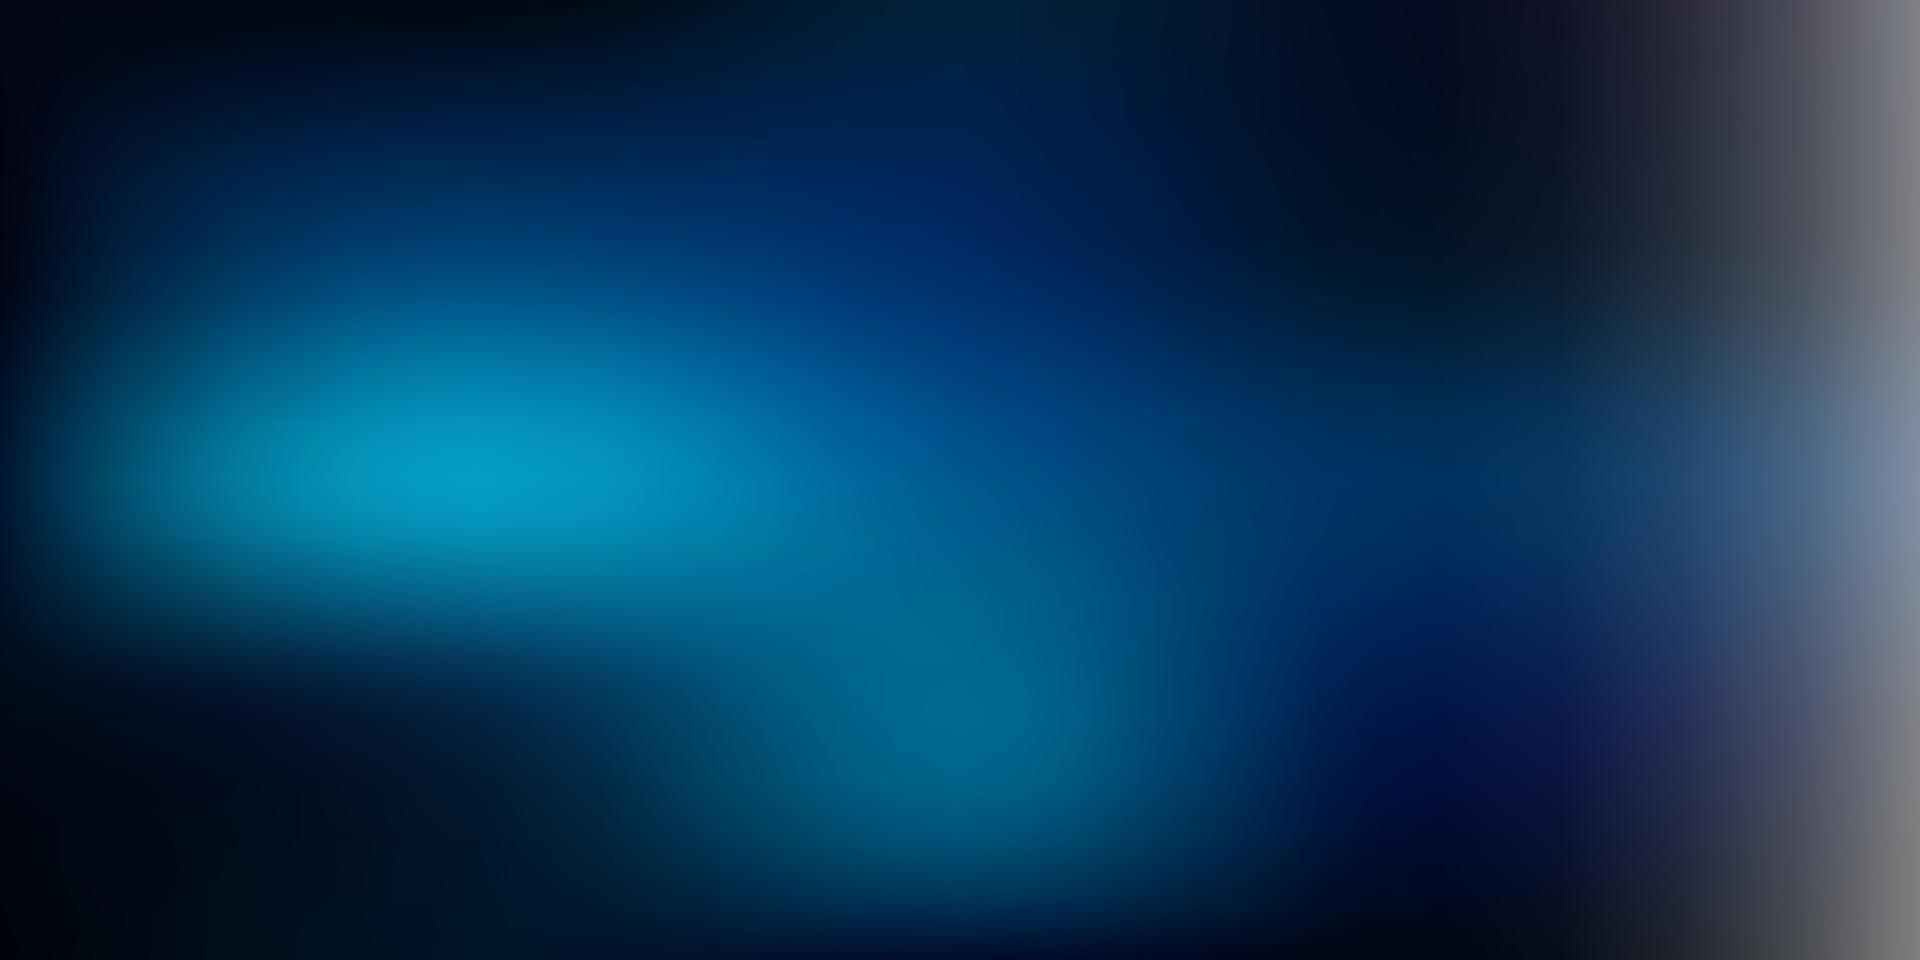 patrón borroso vector azul oscuro.